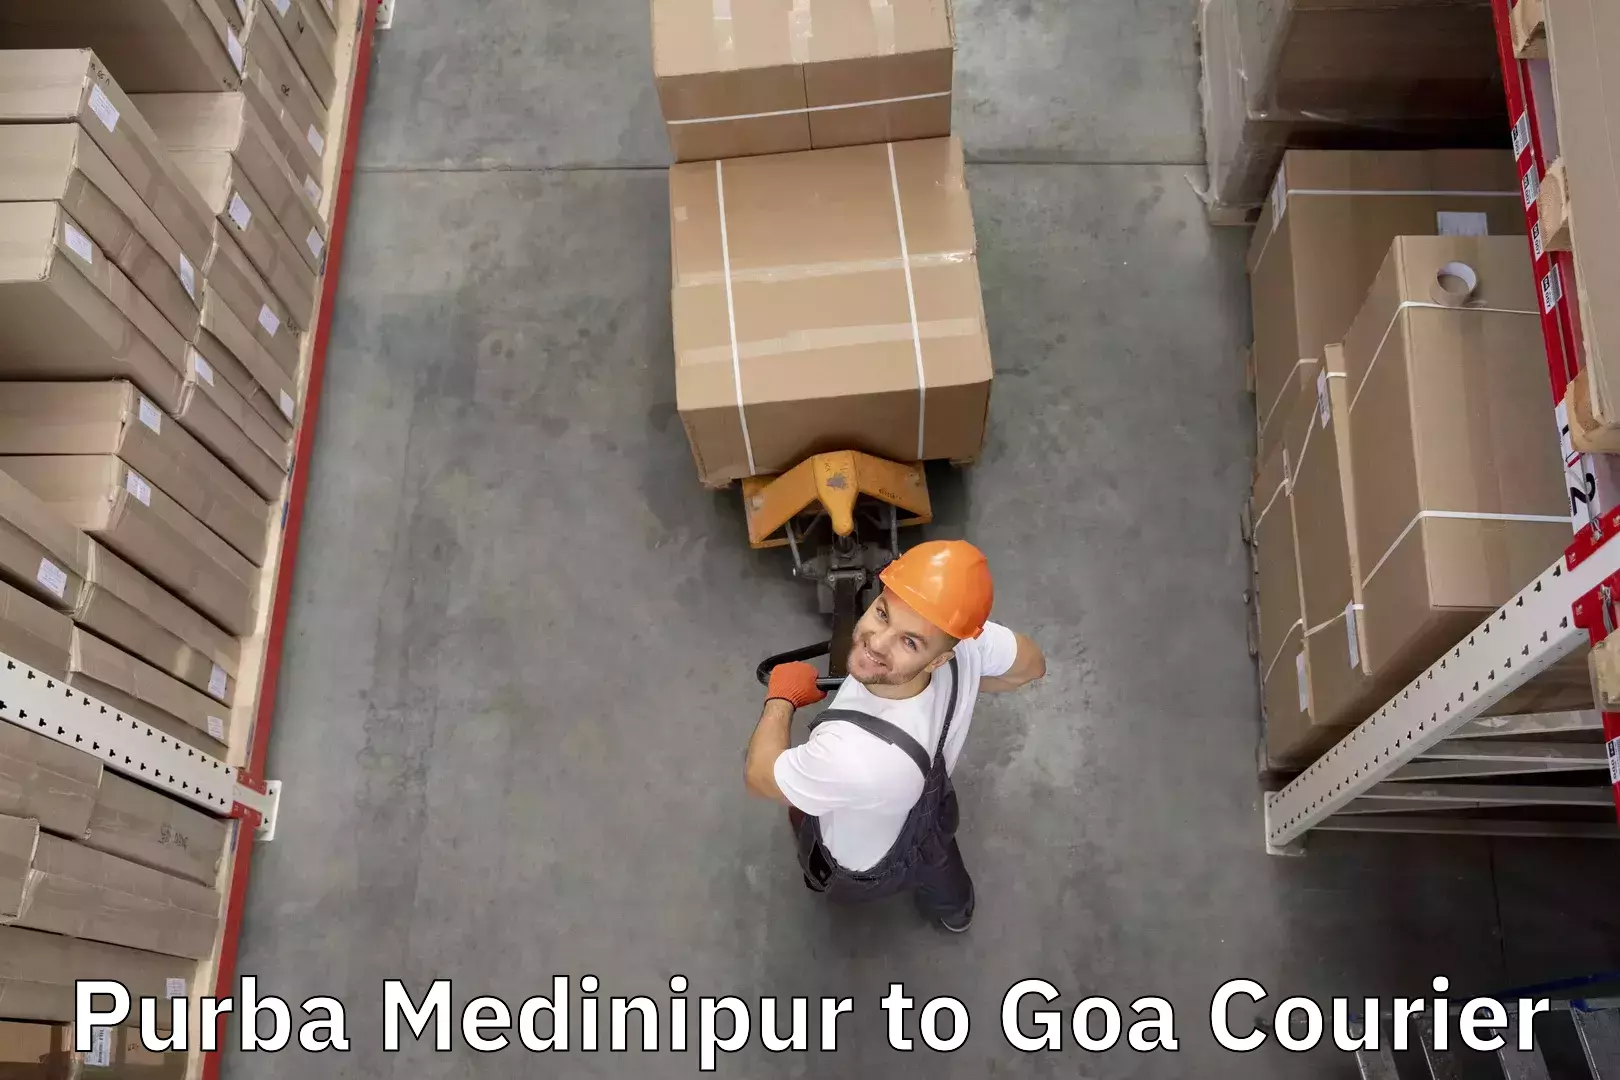 Baggage relocation service Purba Medinipur to NIT Goa